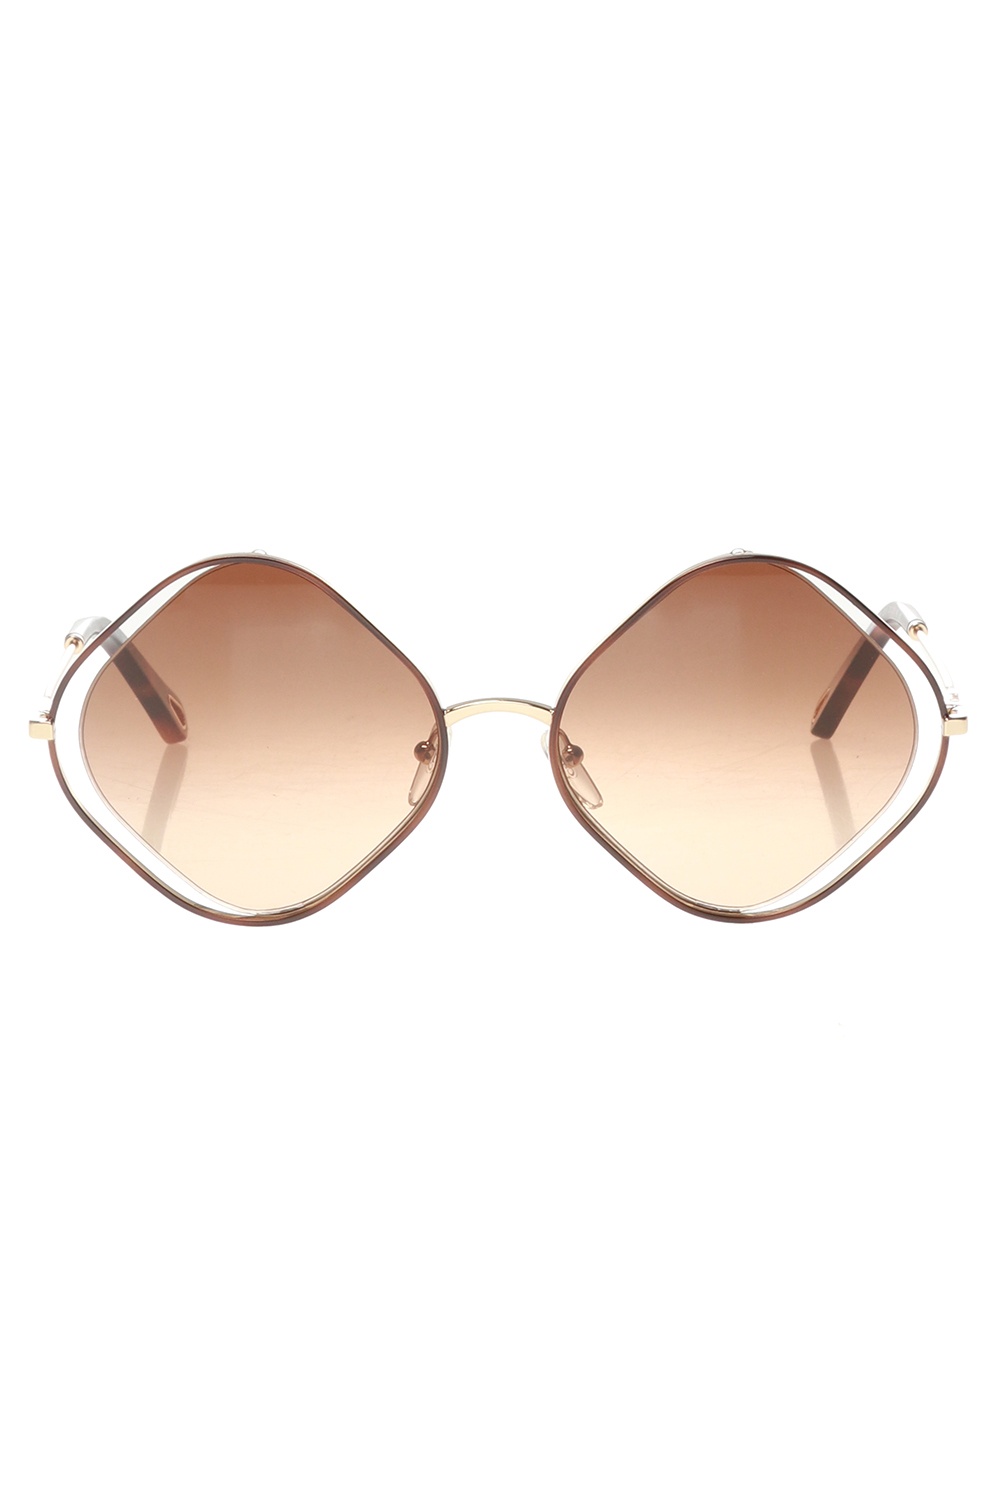 Brown ‘Poppy’ sunglasses Chloé - Vitkac Germany